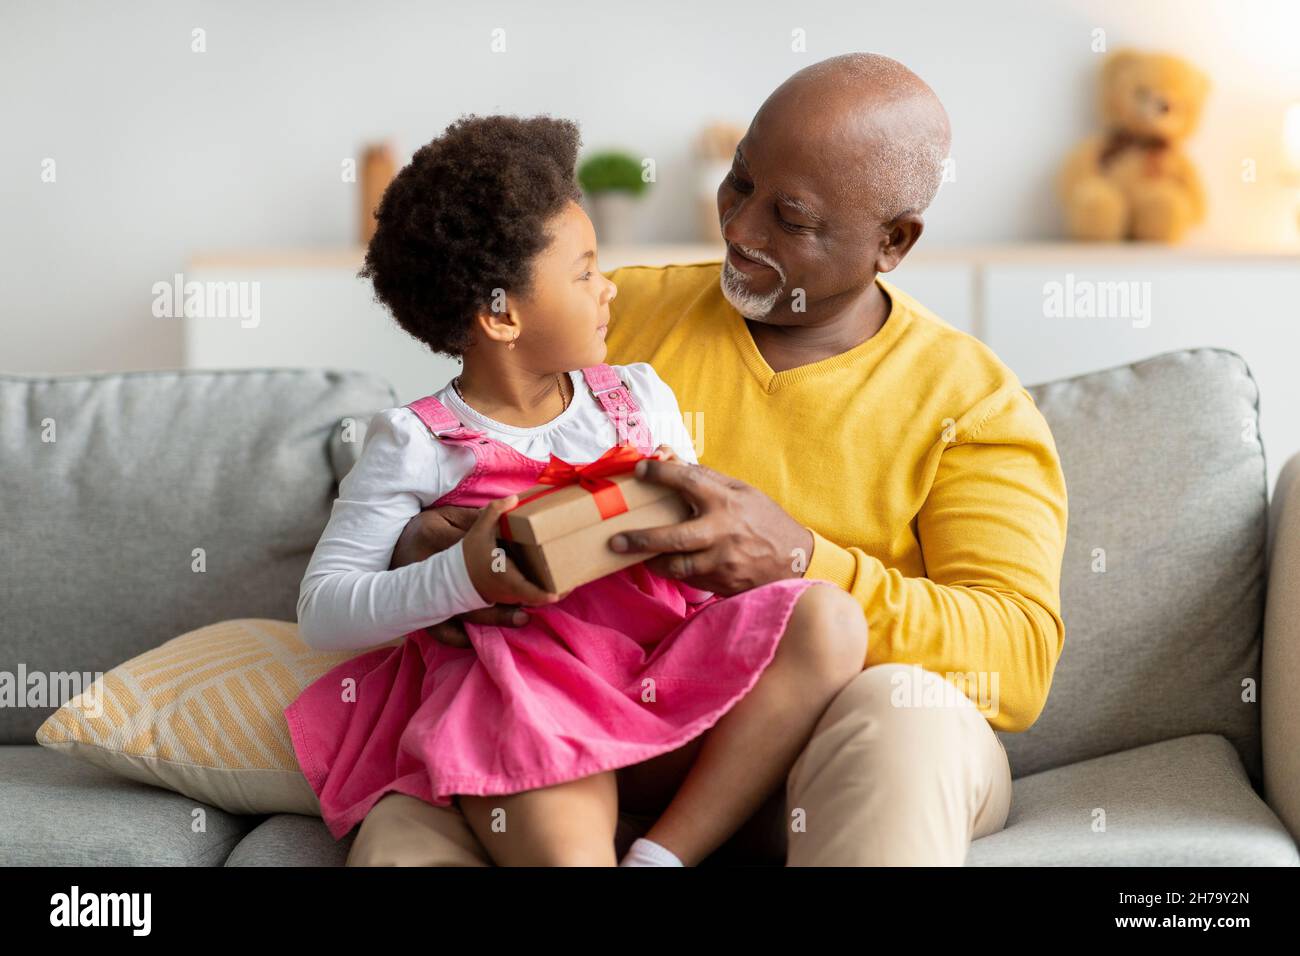 Felice african american bambina ottenere regalo di compleanno, apre scatola da uomo anziano in soggiorno interno Foto Stock